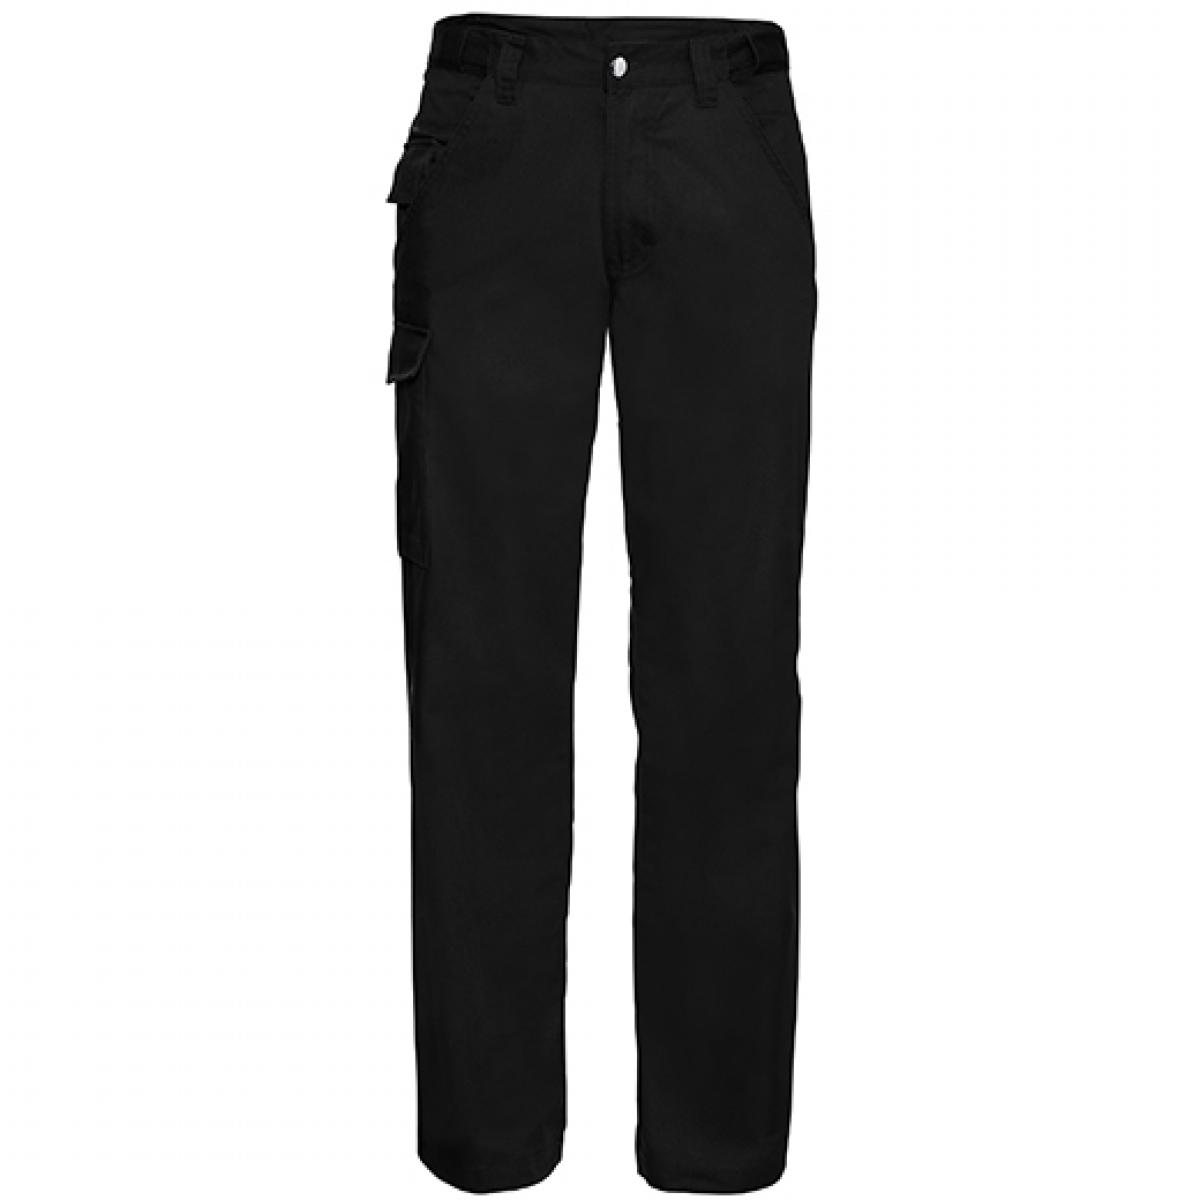 Hersteller: Russell Herstellernummer: R-001M-0 Artikelbezeichnung: Workwear-Hose aus Polyester-/Baumwoll-Twill Farbe: Black